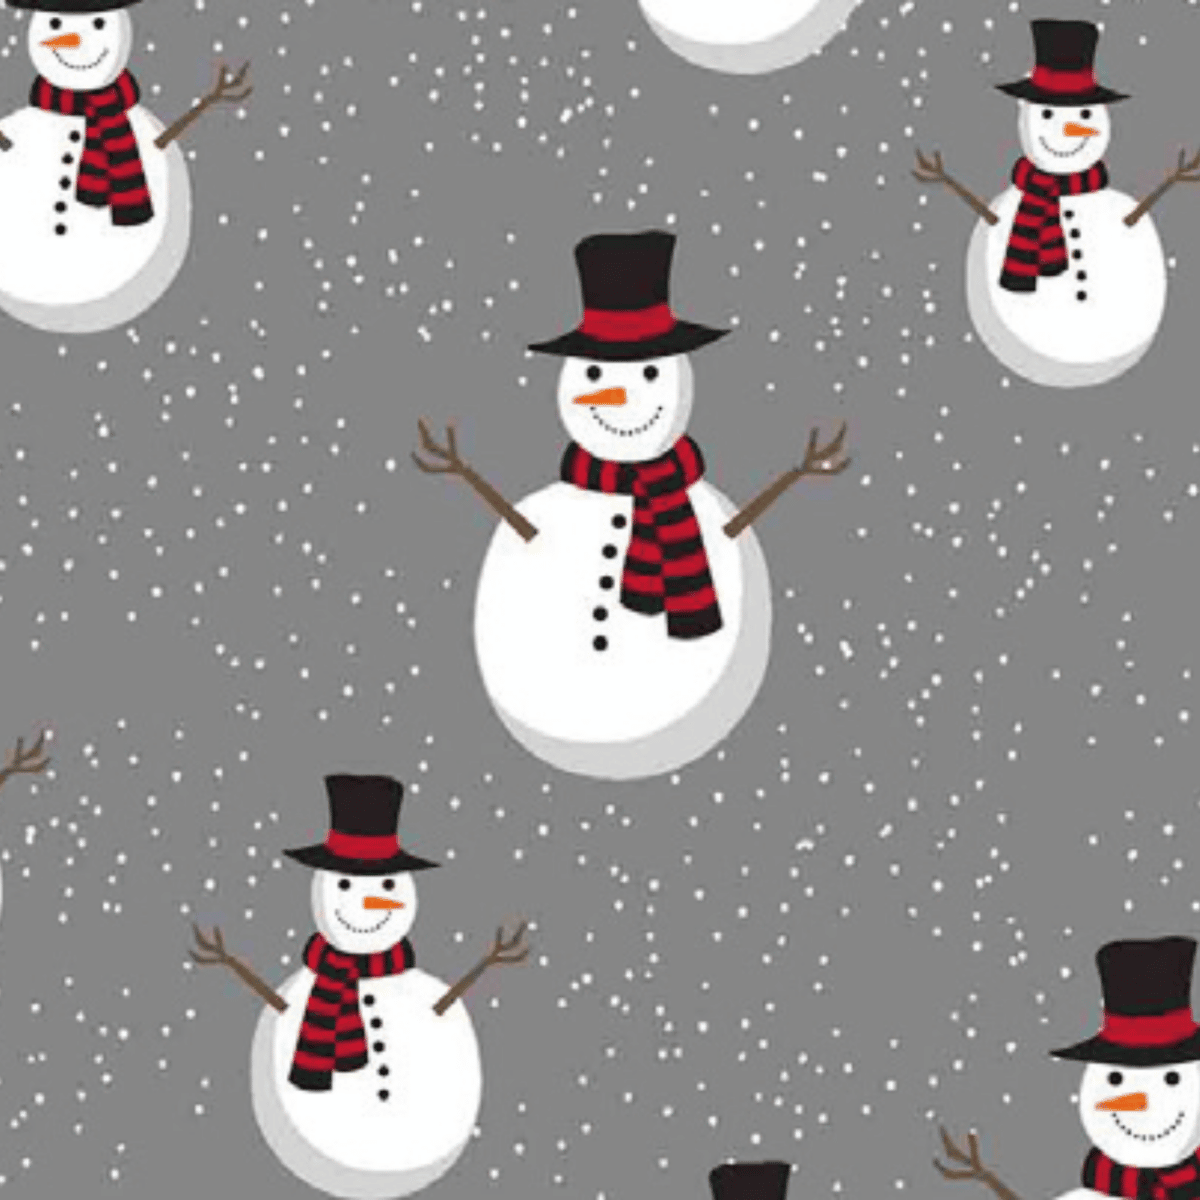 coperta-snowman-plaid-sherpa-calda-inverno-pupazzo-di-neve-dettaglio-grigio-antracite